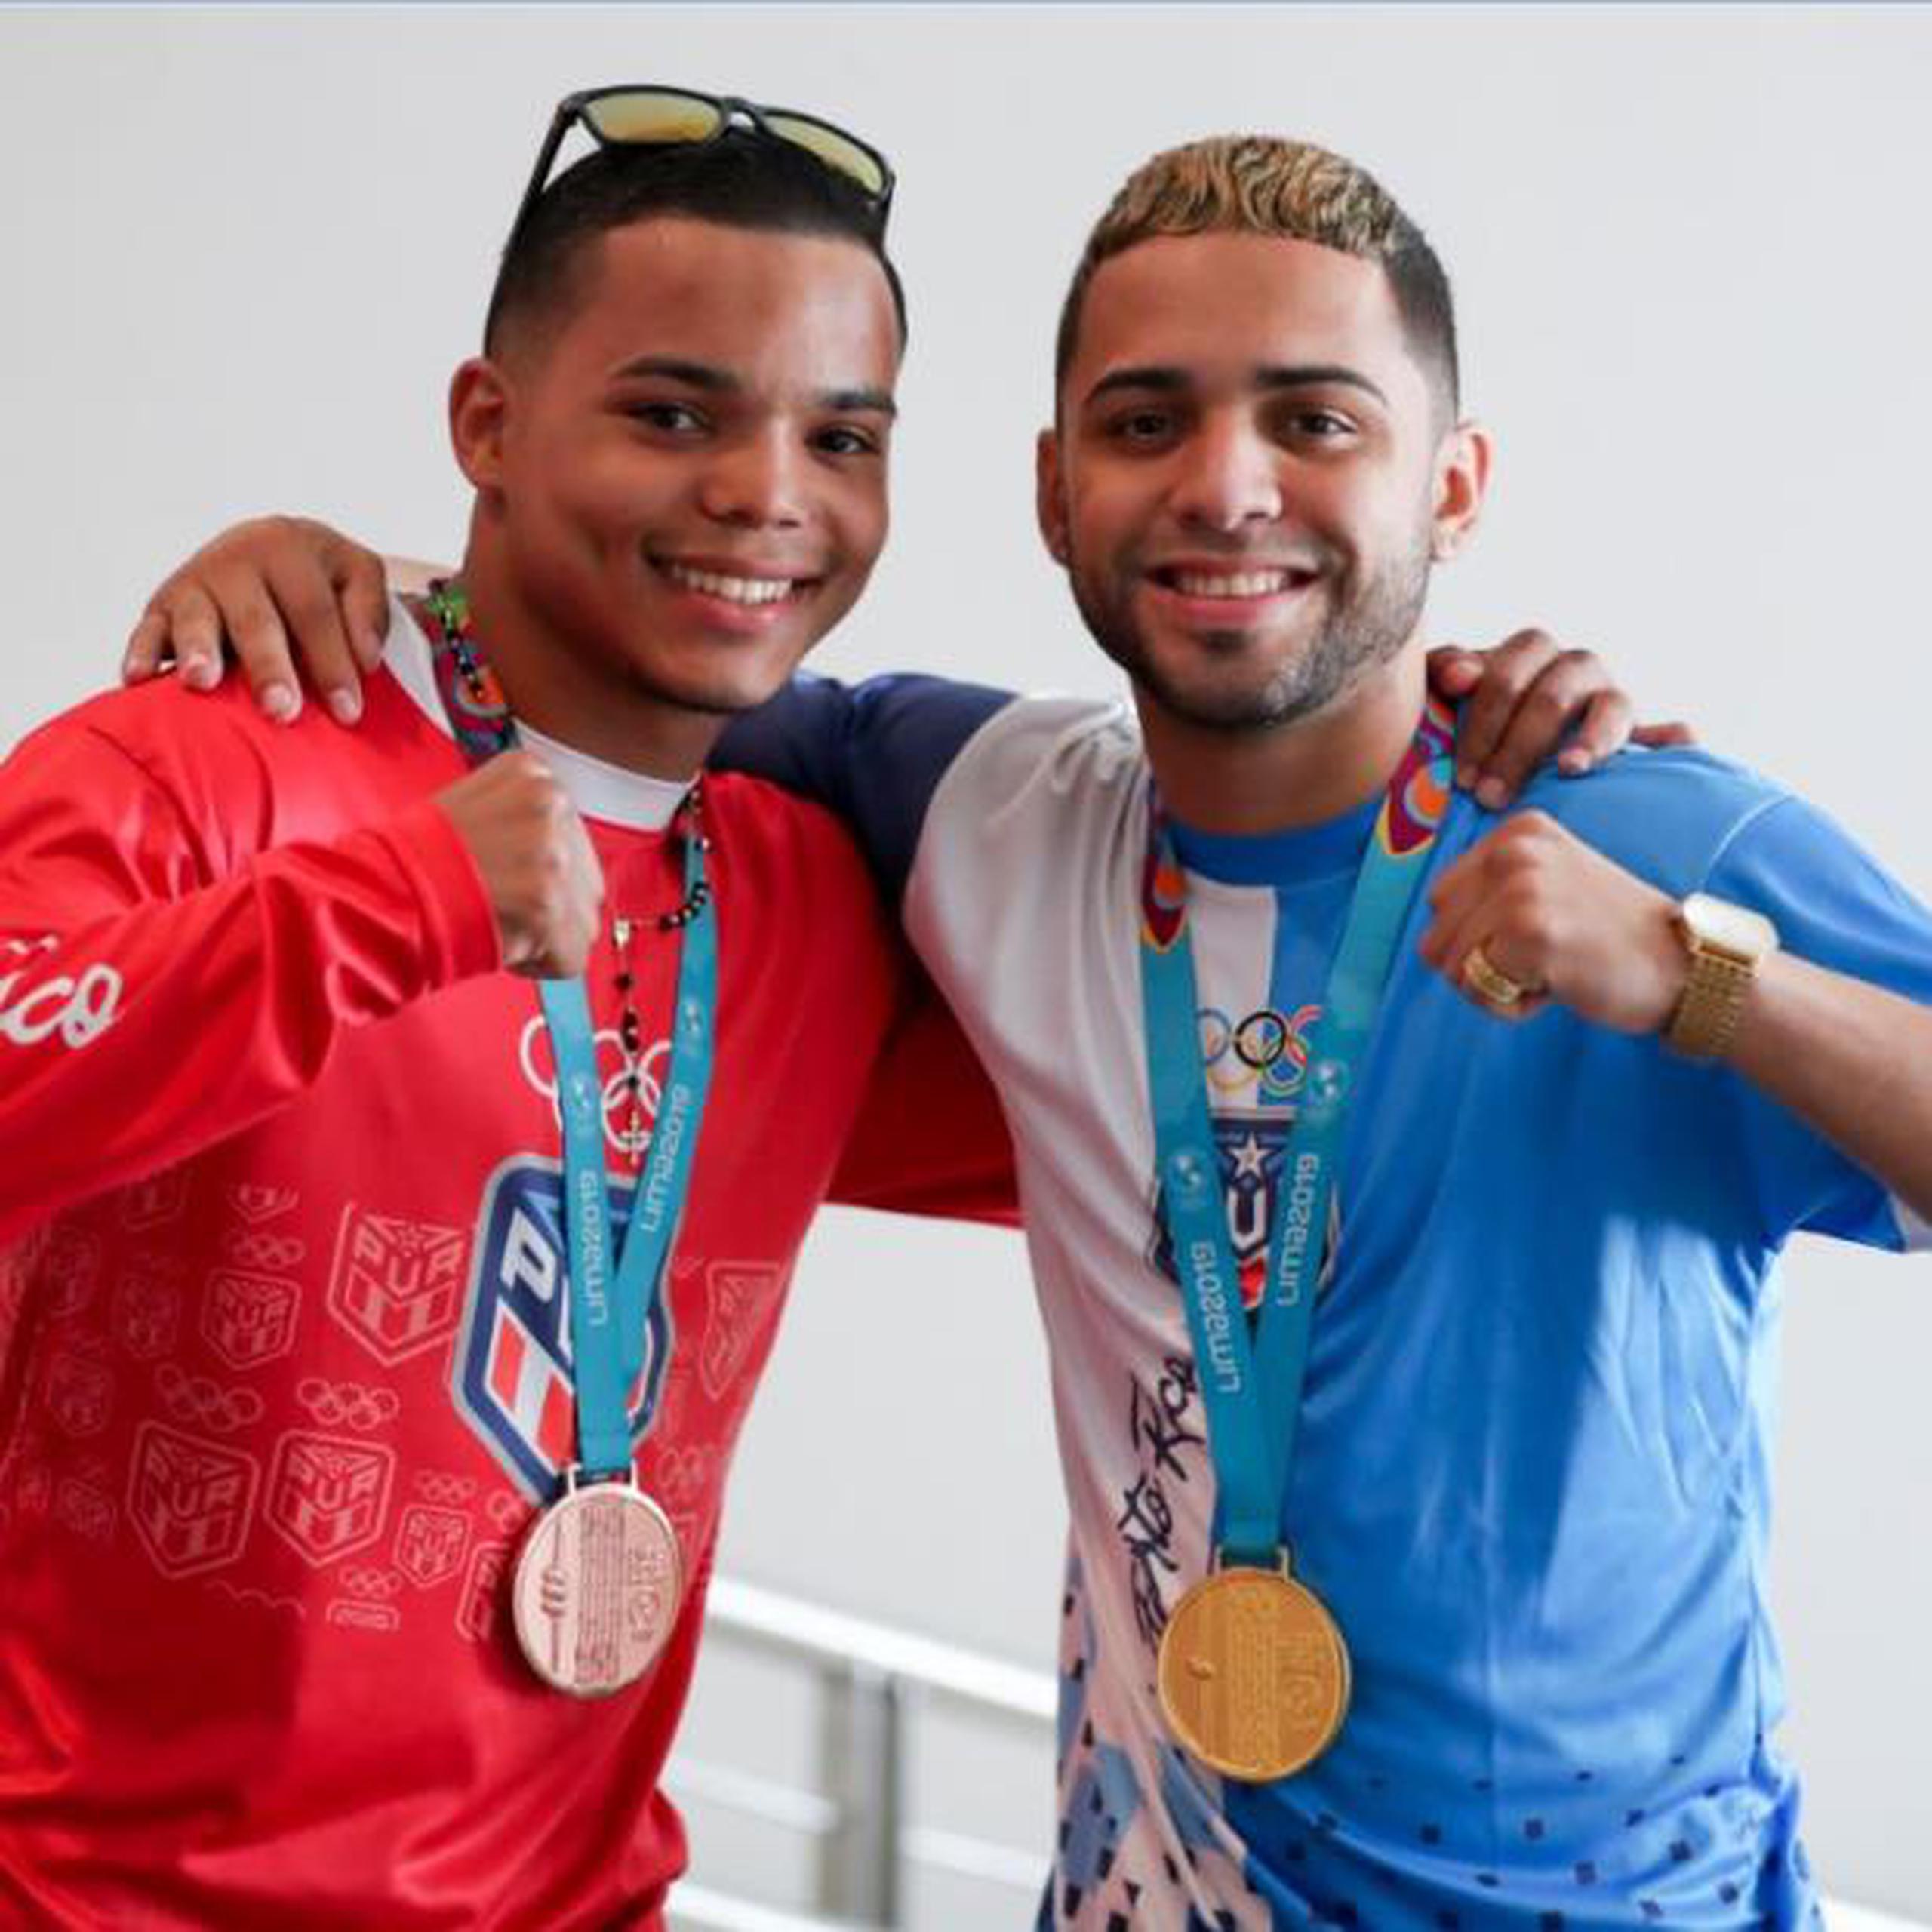 Oscar Collazo y Yankiel Rivera ganaron, respectivamente, medallas de oro y bronce en los Panamericanos Lima 2019. (Suministrada)